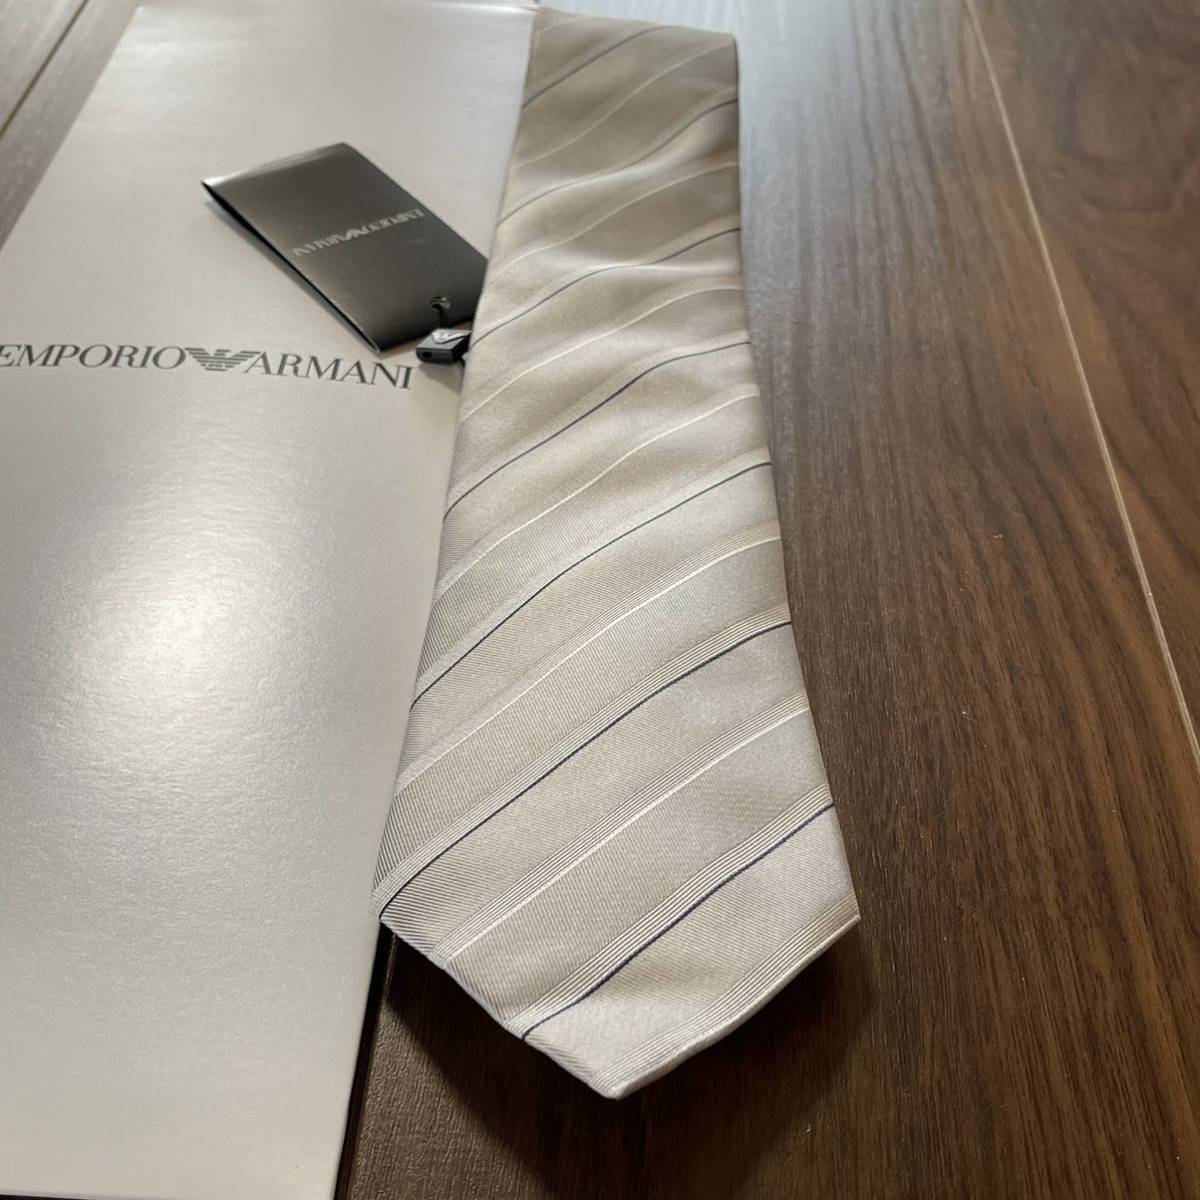 EMPORIO ARMANI( Emporio Armani ) серебряный полоса галстук новый товар не использовался с биркой с коробкой 